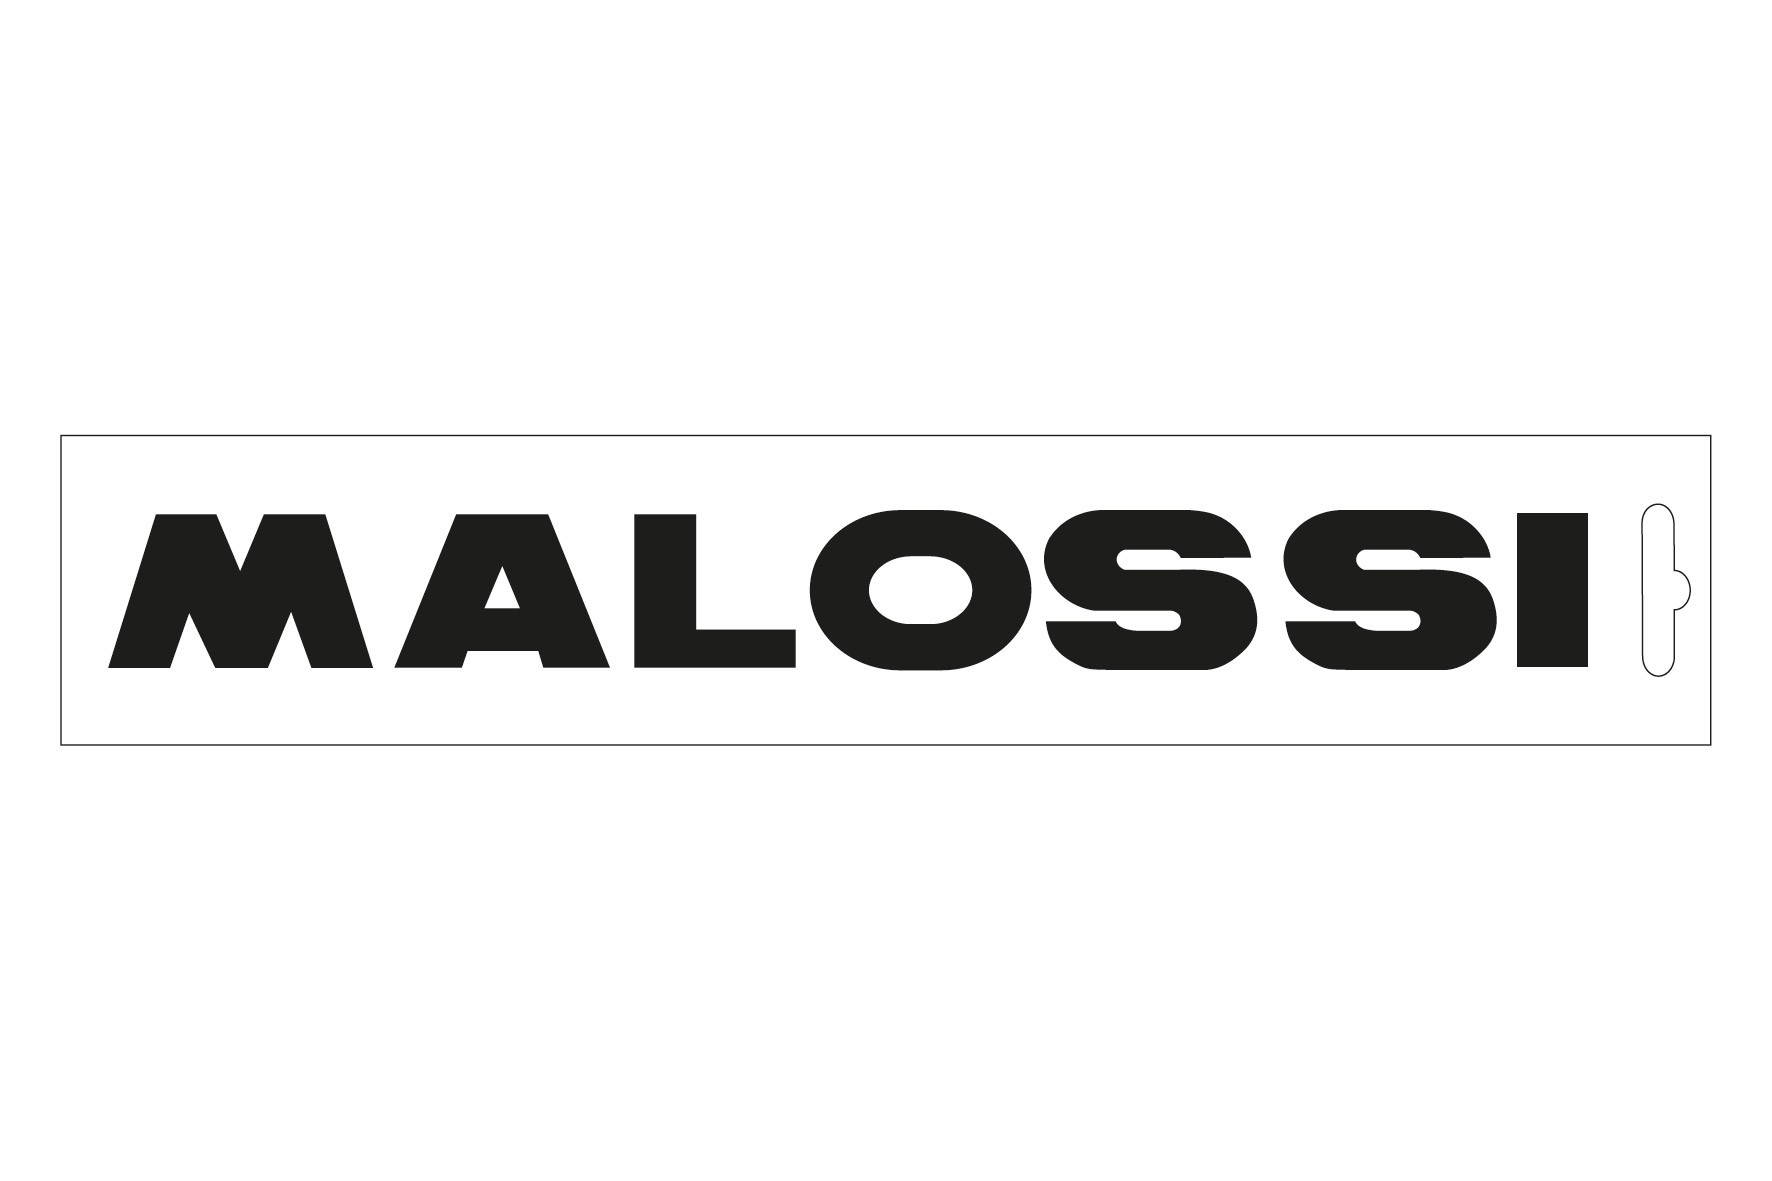 Black malossi sticker - length 14 cm - MalossiStore